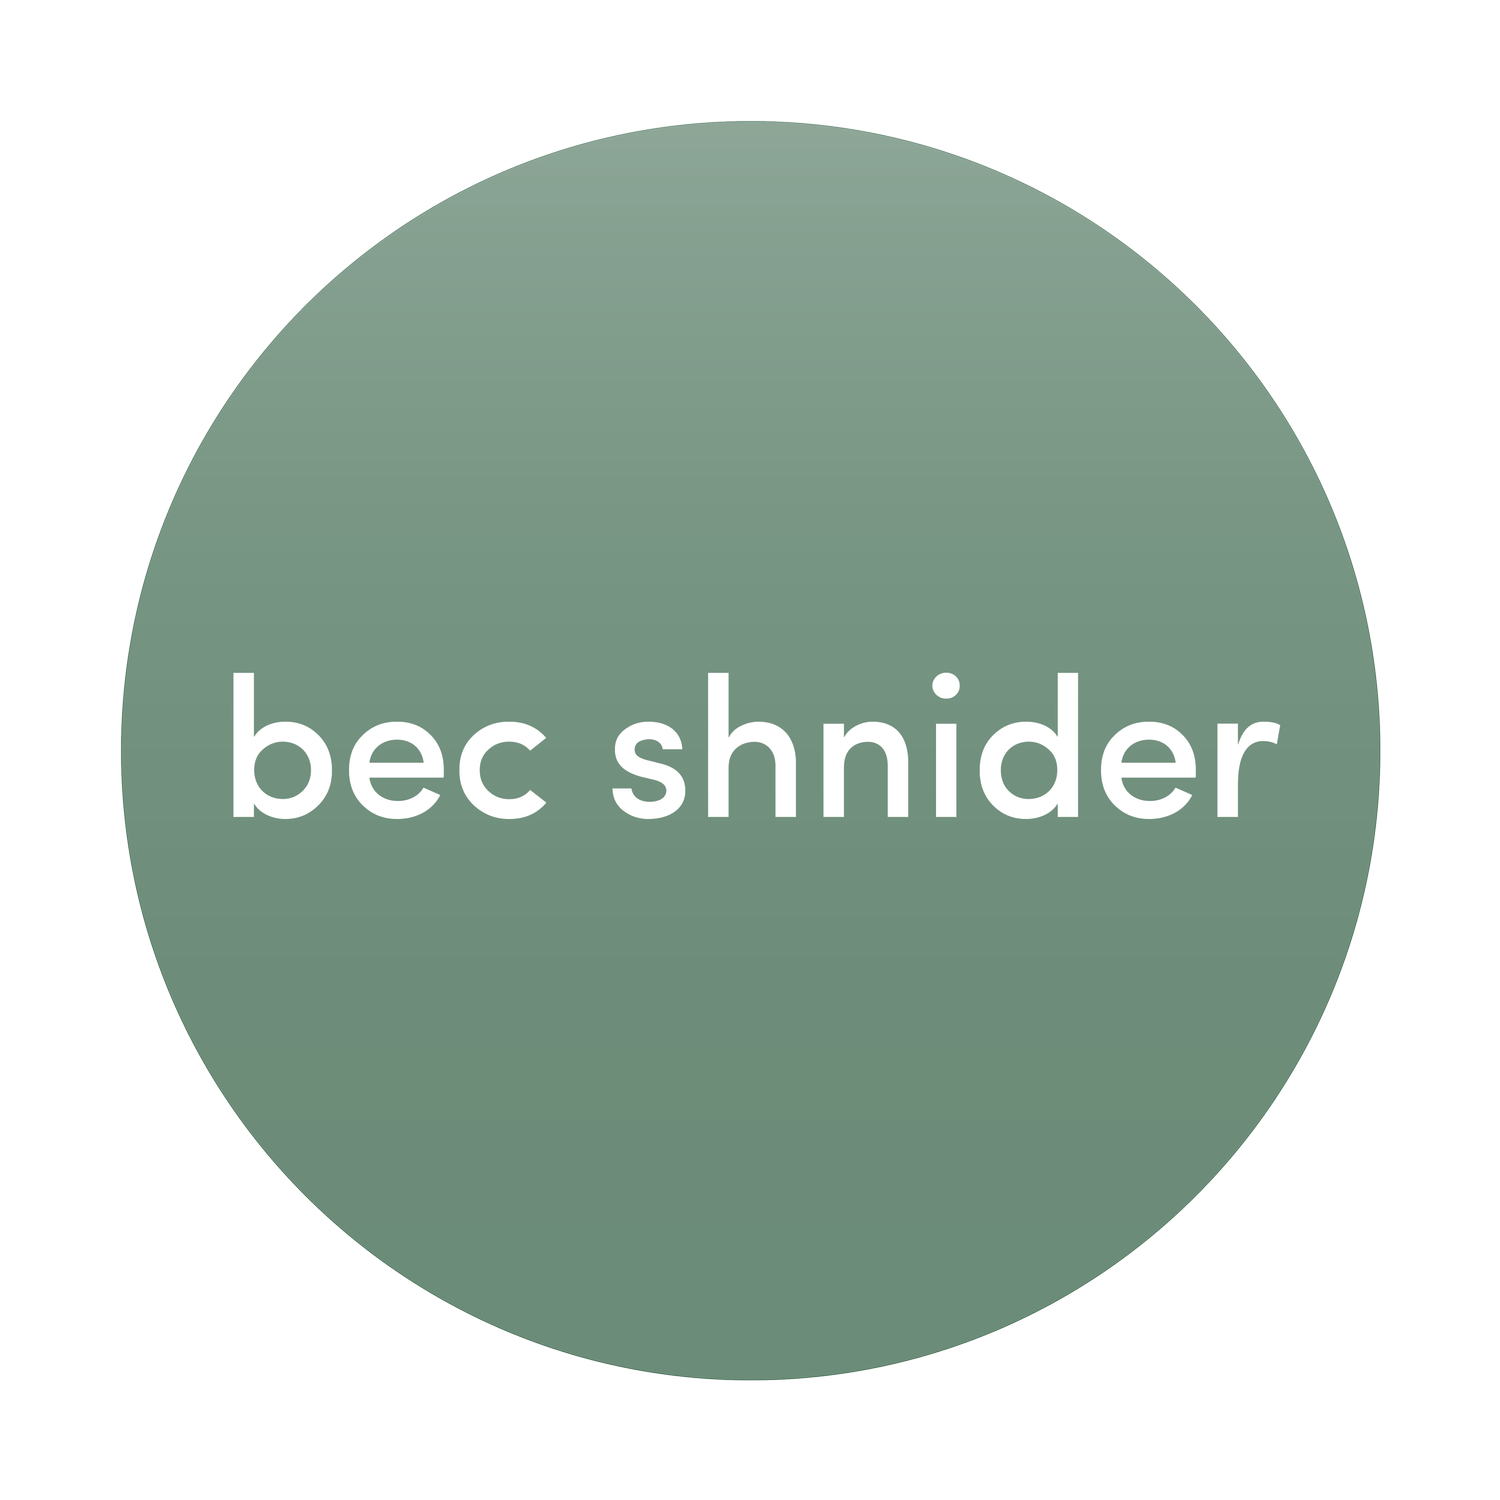 Bec Shnider